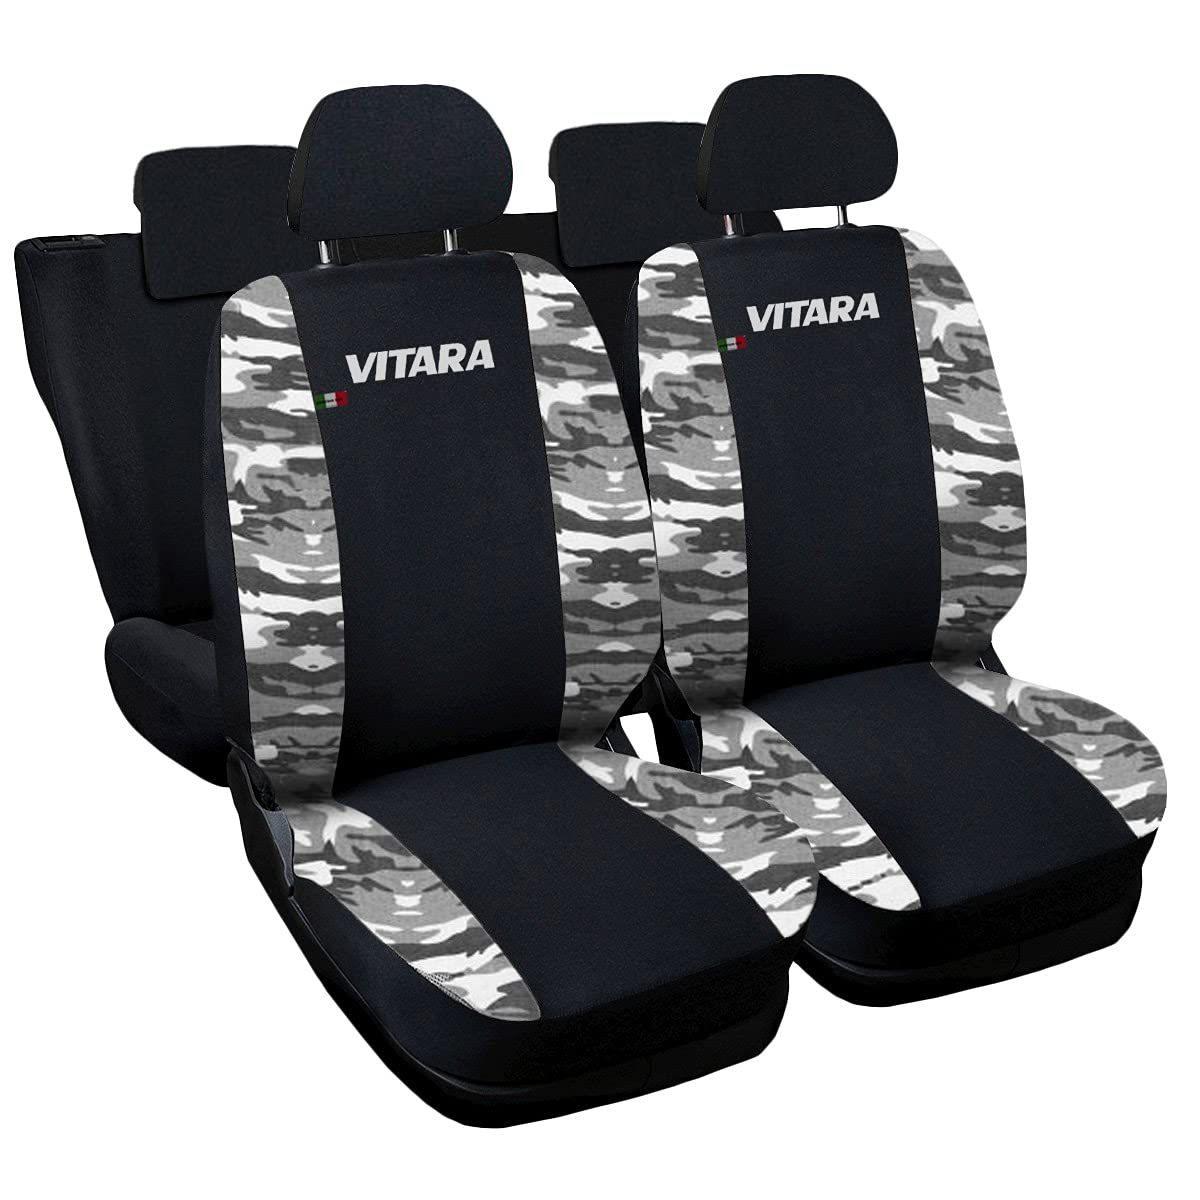 Lupex Shop Autositzbezüge kompatibel mit Vitara, Made in Italy, Polyestergewebe, kompletter Satz Vorder- und Rücksitze (Schwarz - Camouflage Grau) von Lupex Shop